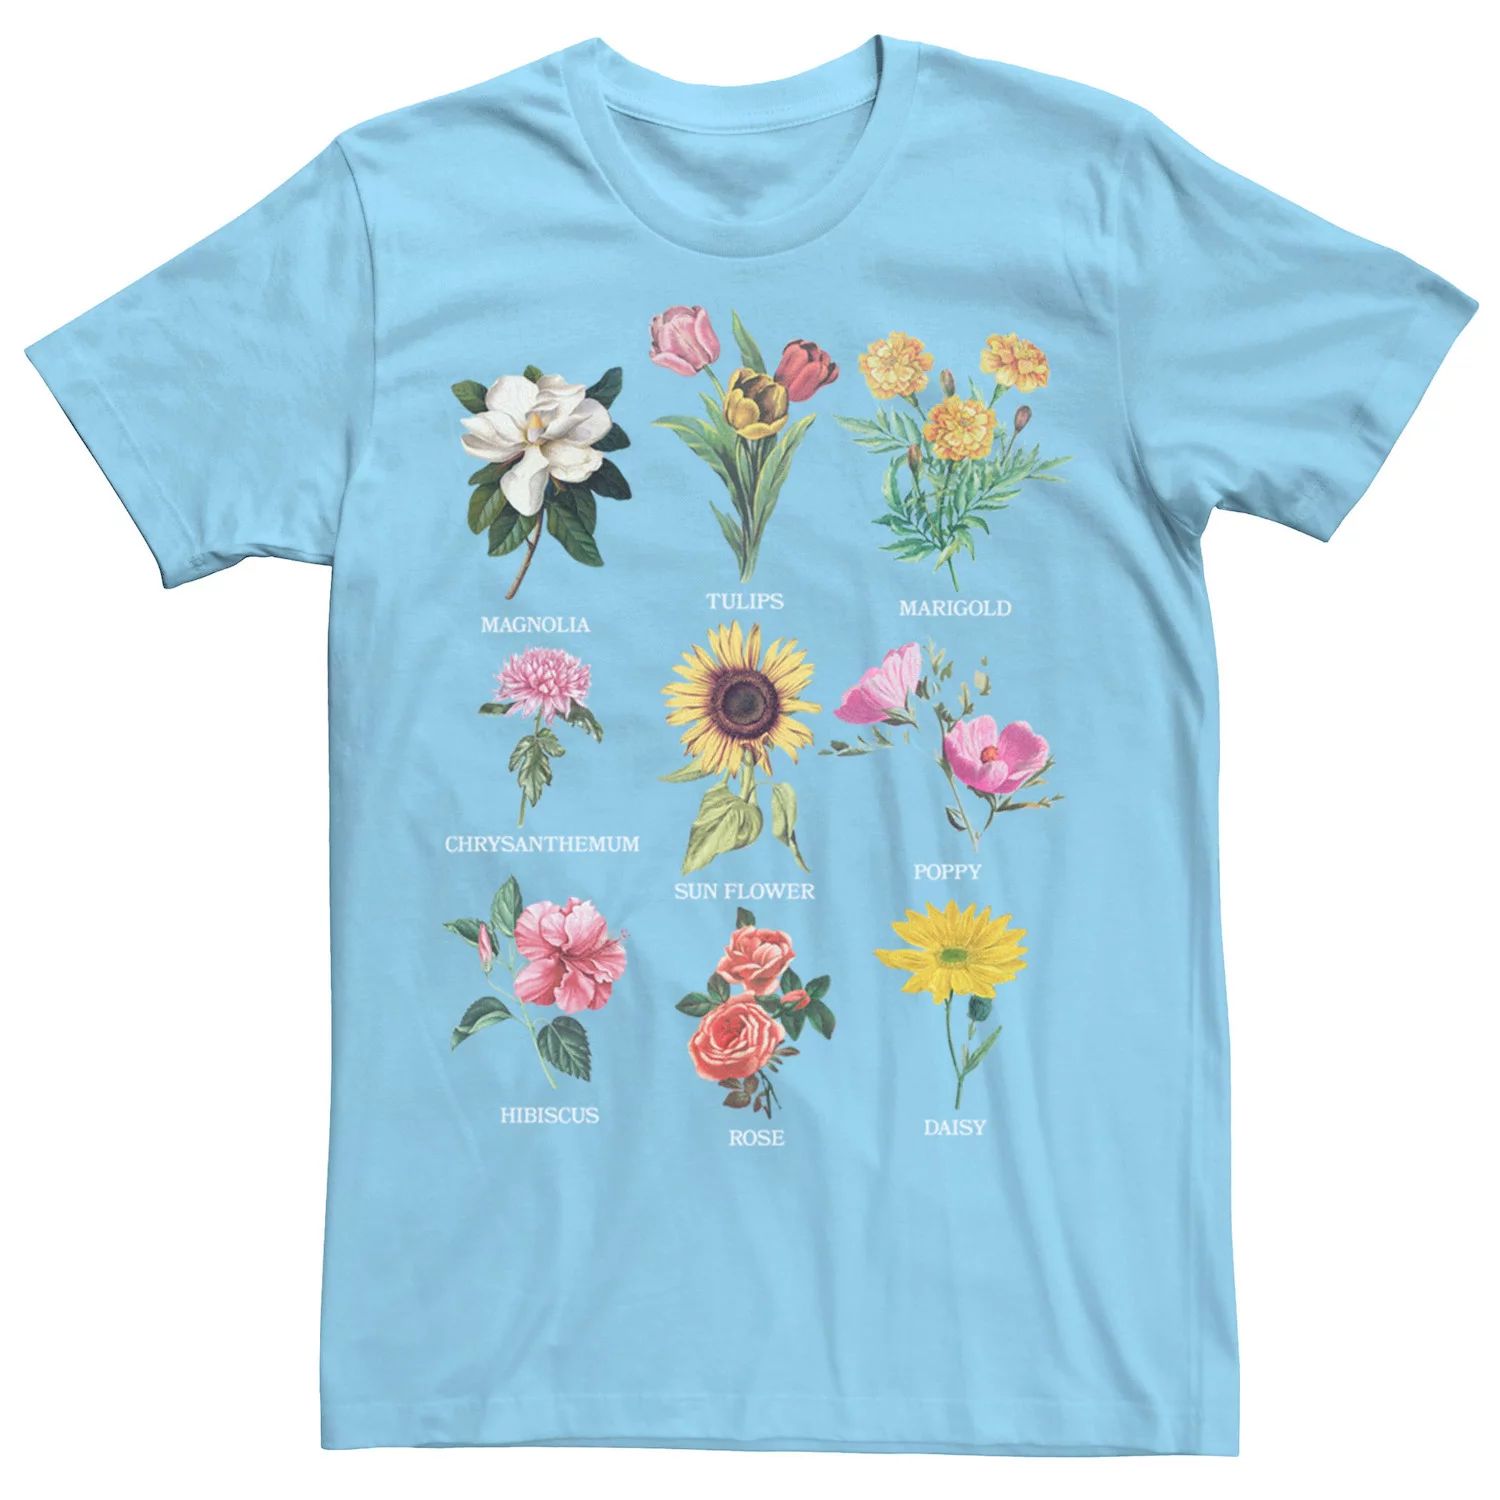 Мужская футболка с ботаническими фотореалистичными цветами Licensed Character мужская футболка кот с цветами s черный